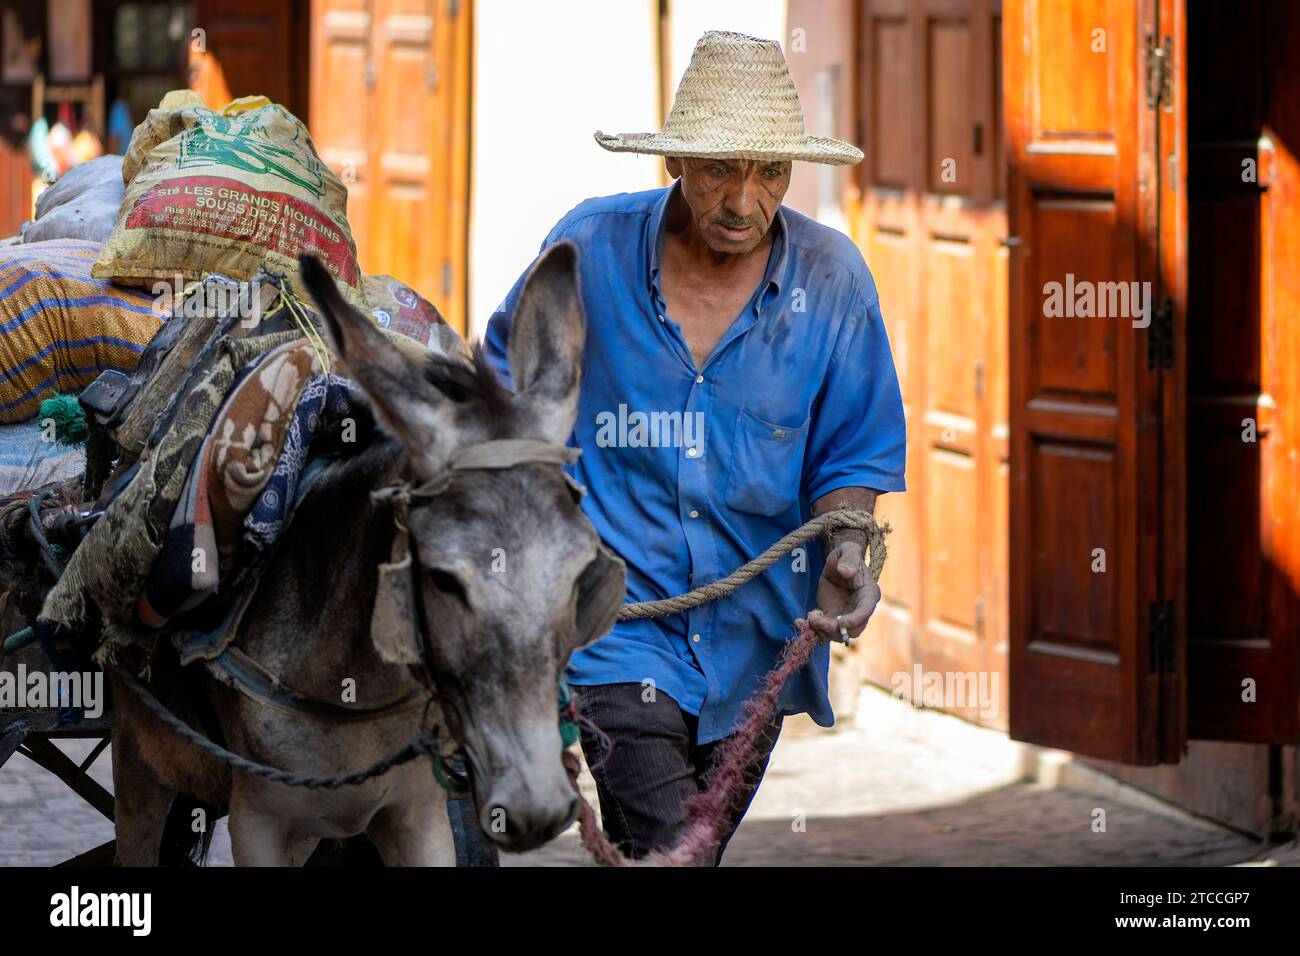 Marrakesch, Marokko: Marokkanischer Mann, der einen Esel auf einer Straße in der Medina von Marrakesch führt. Stockfoto